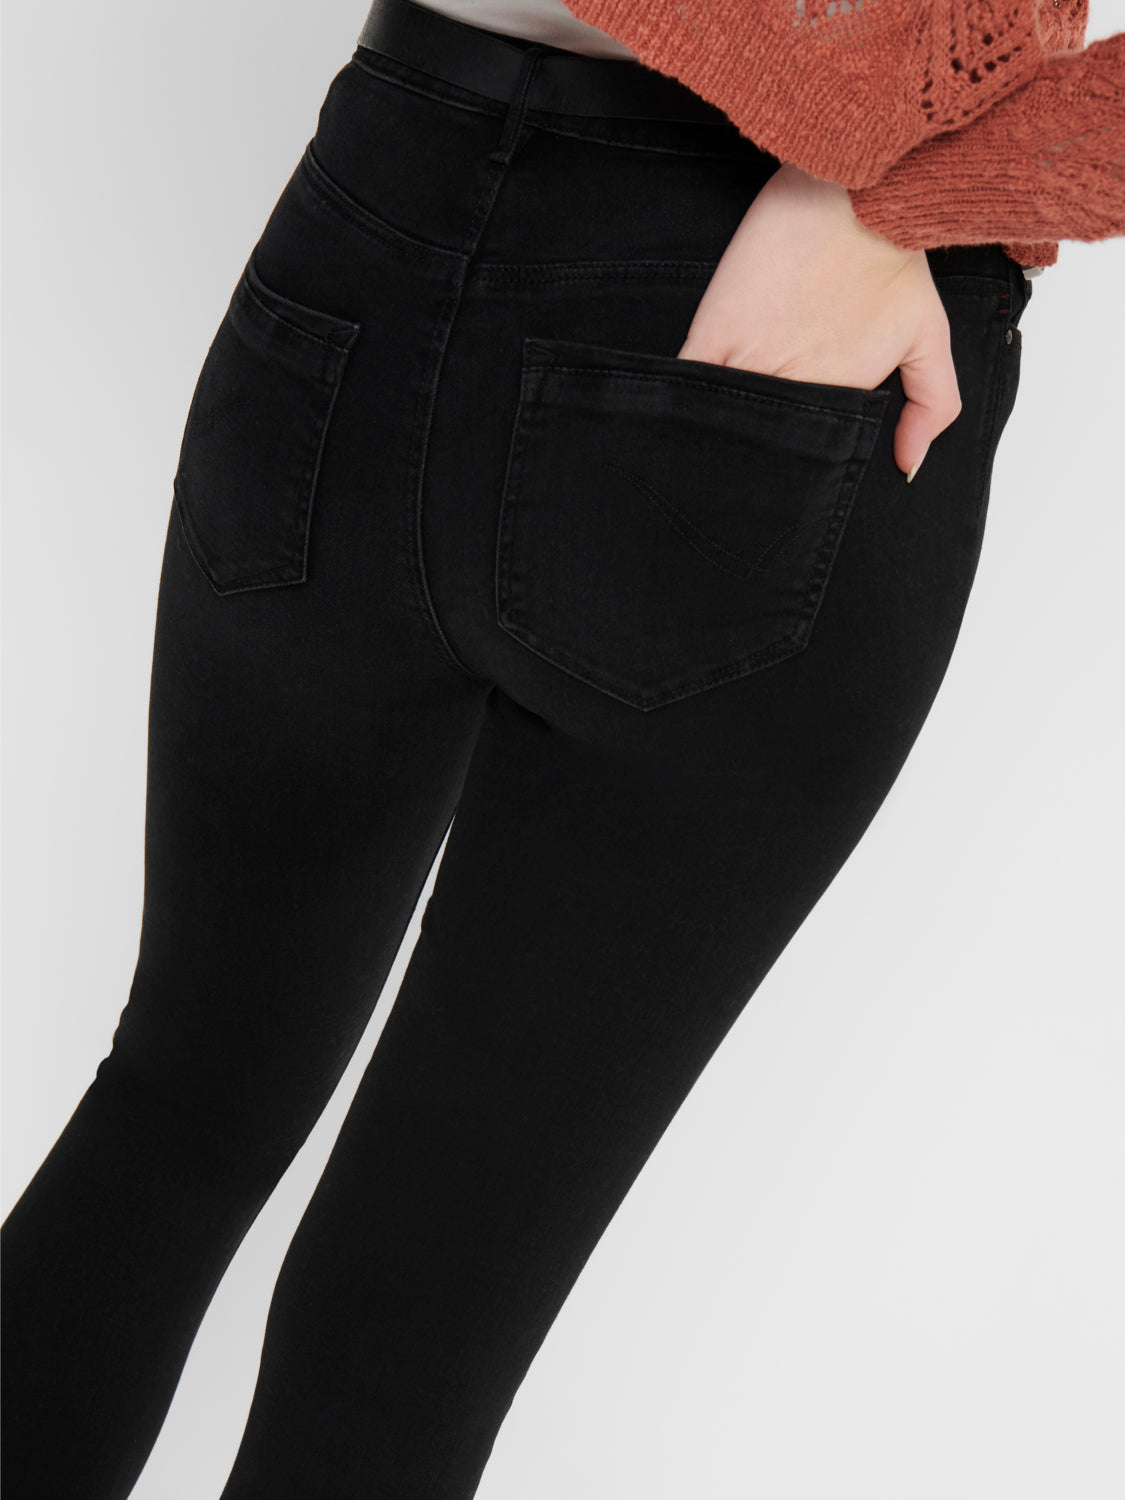 ONLPAOLA Jeans - Black Denim